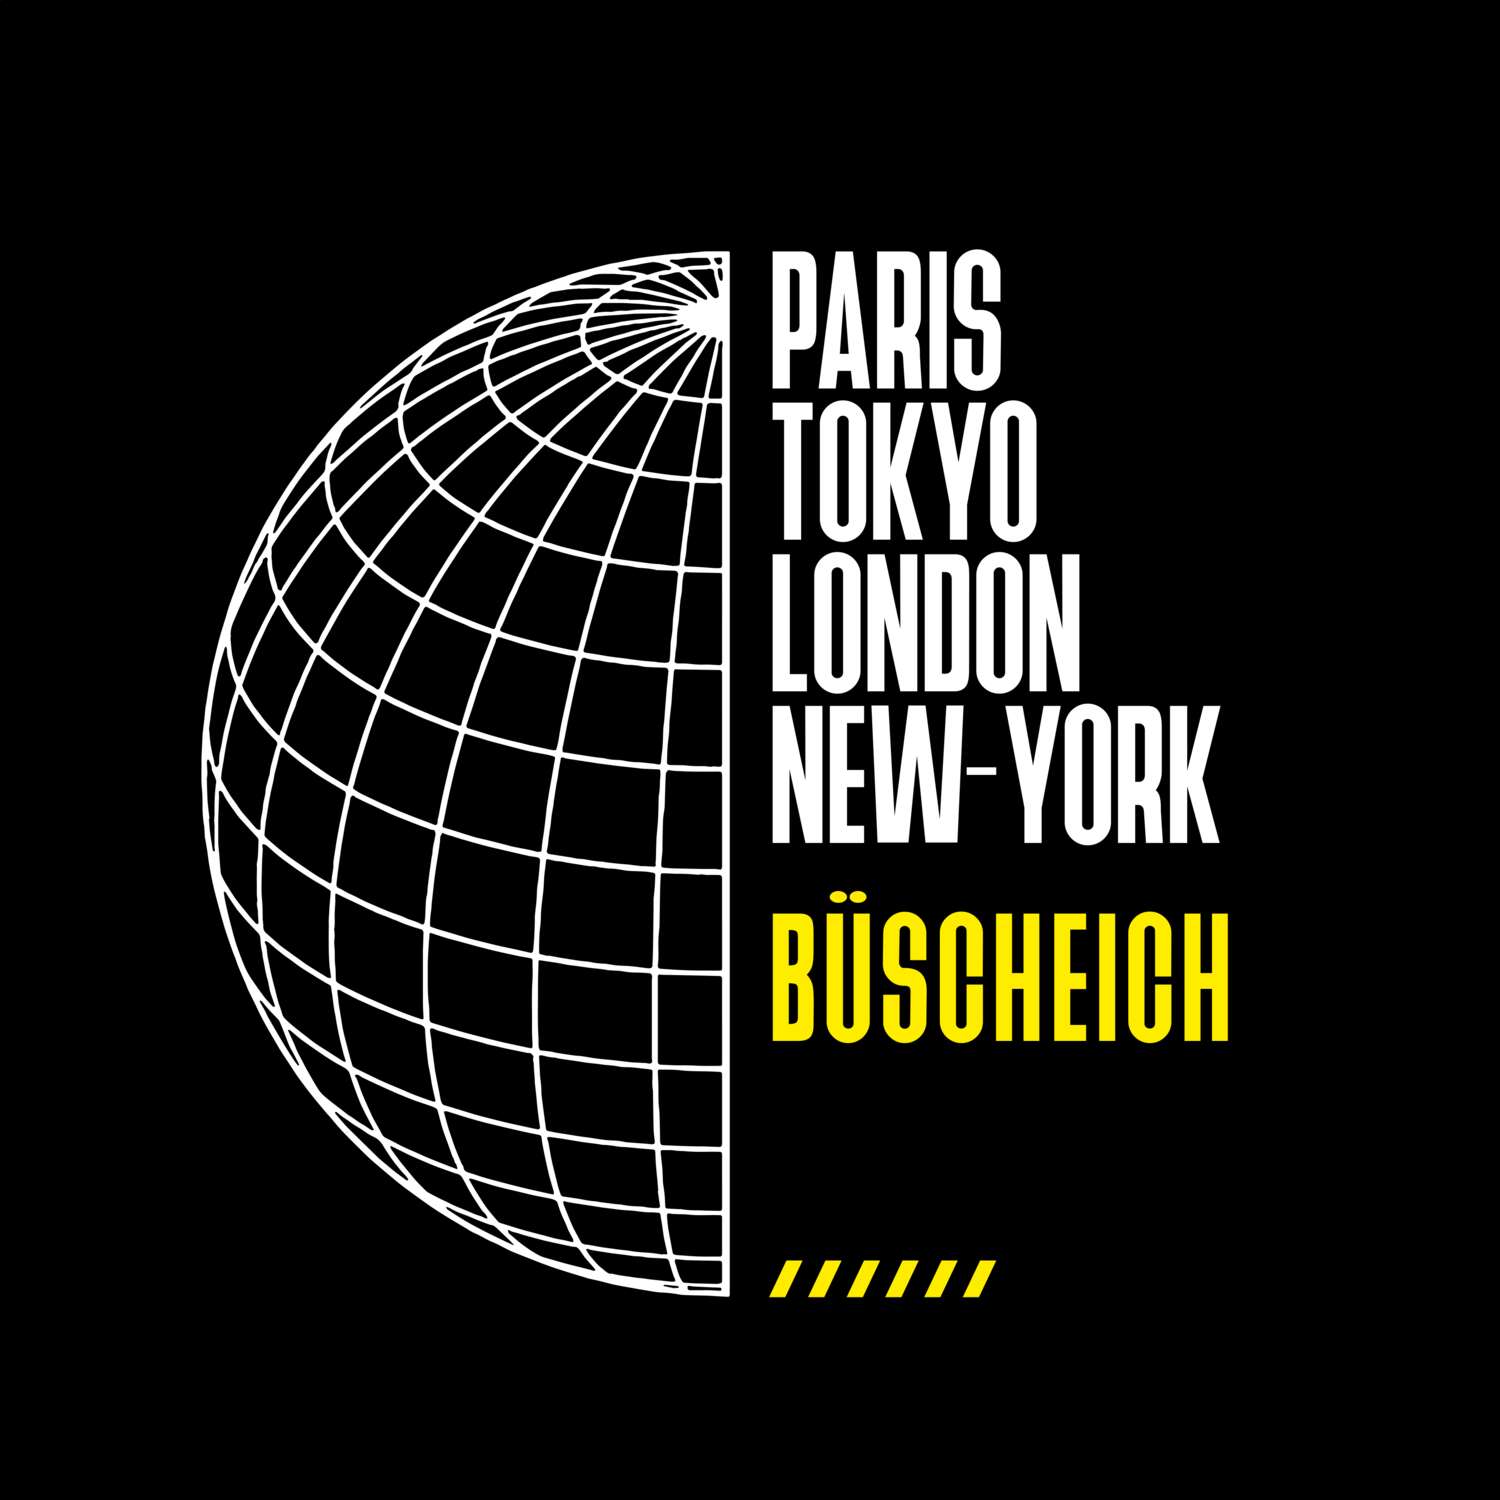 Büscheich T-Shirt »Paris Tokyo London«